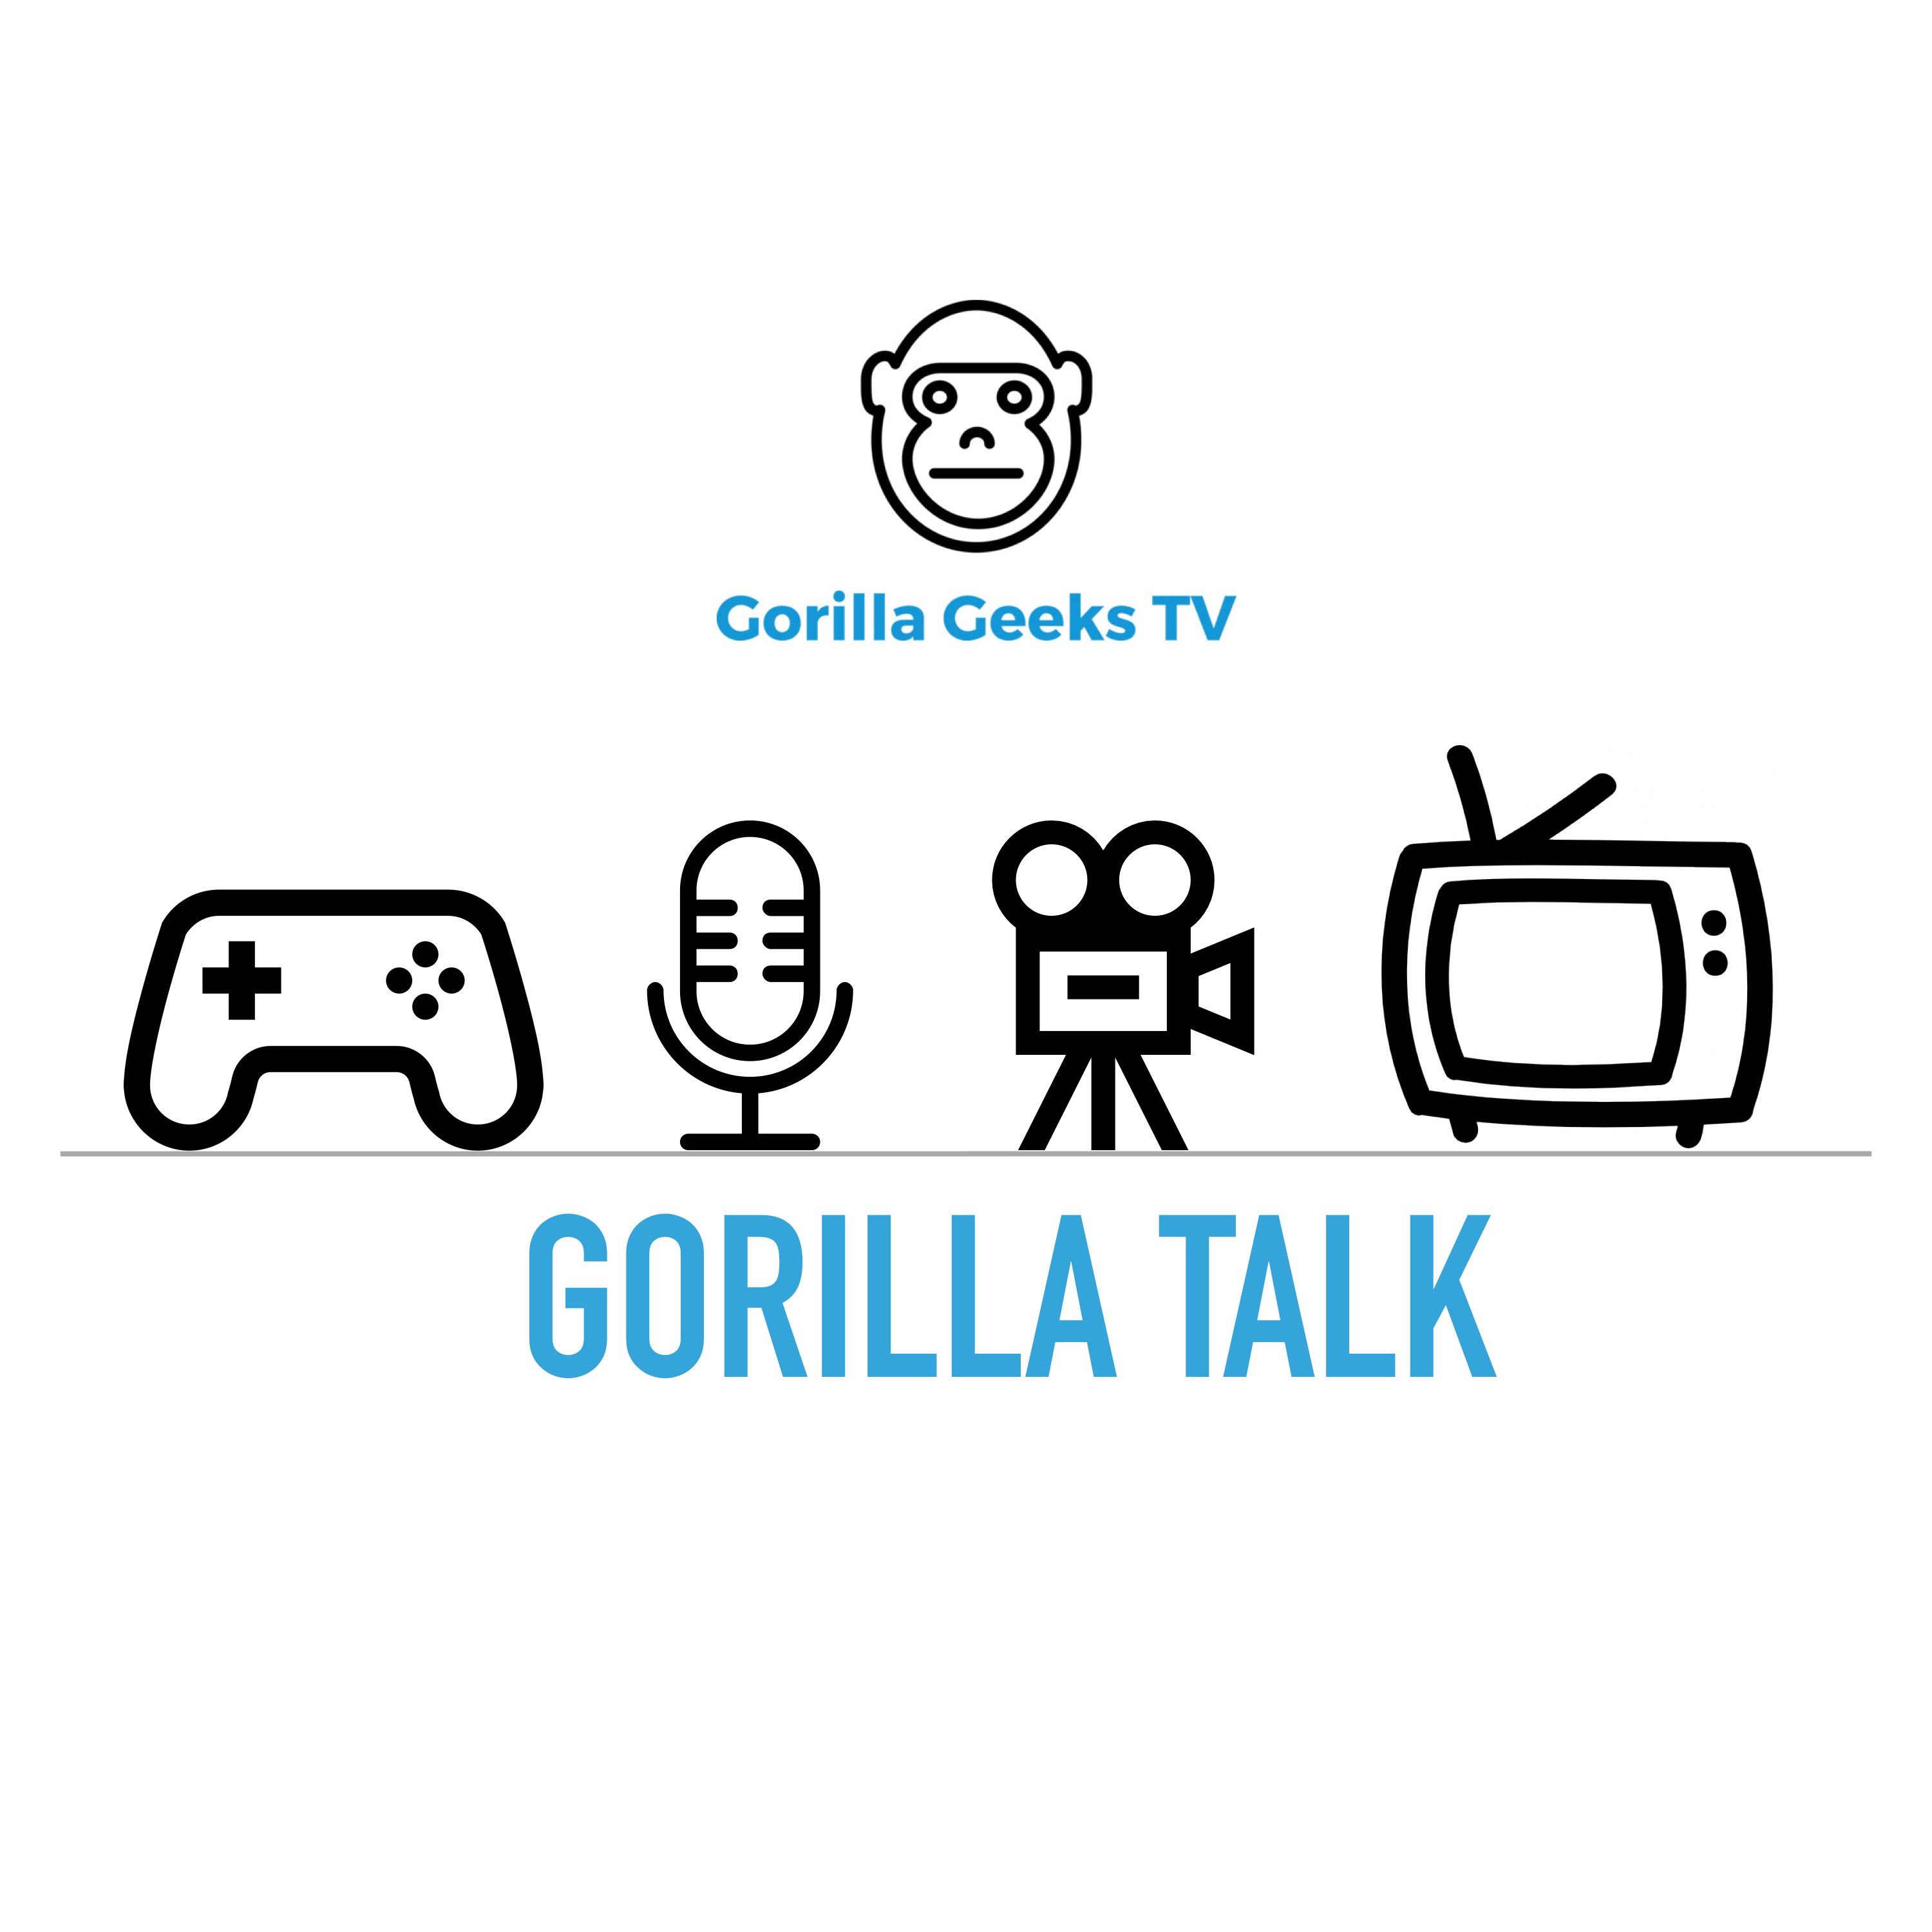 Gorilla Talk